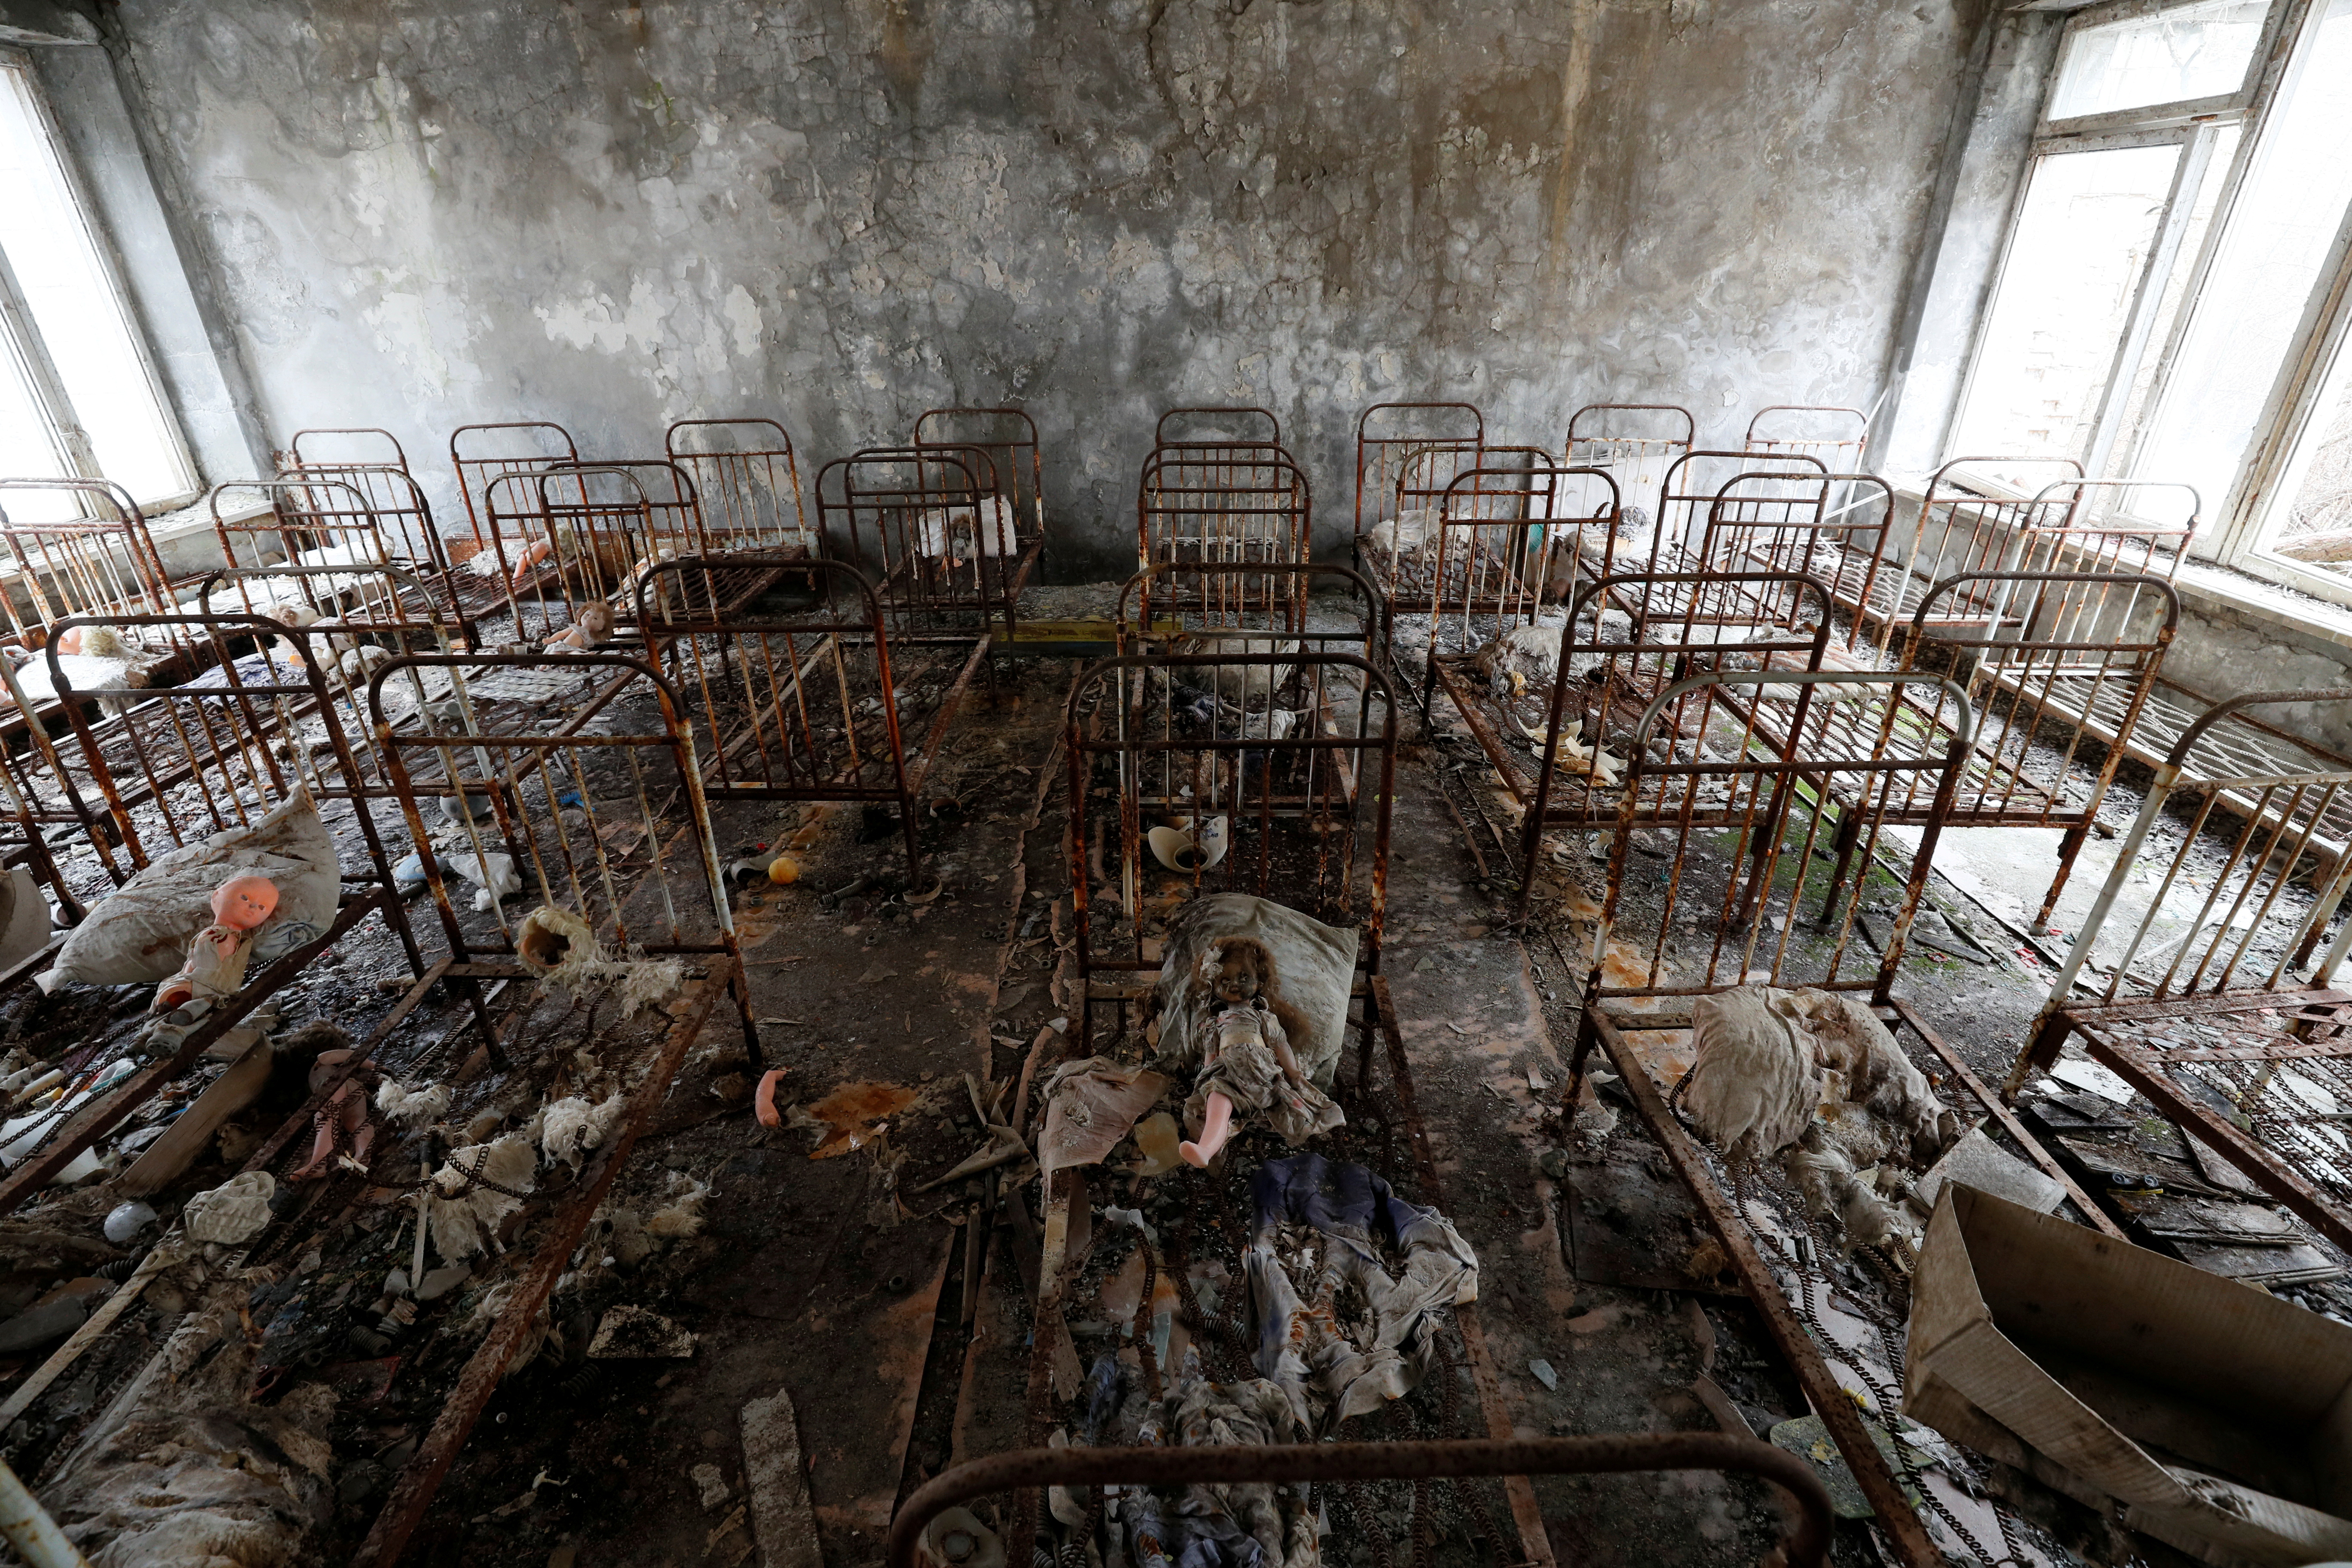 Http chernobyl. Чернобыль Припять 1986. Зона отчуждения Чернобыльской АЭС 1986. Припять Чернобыль авария на ЧАЭС 1986. Припять ЧАЭС 2021.